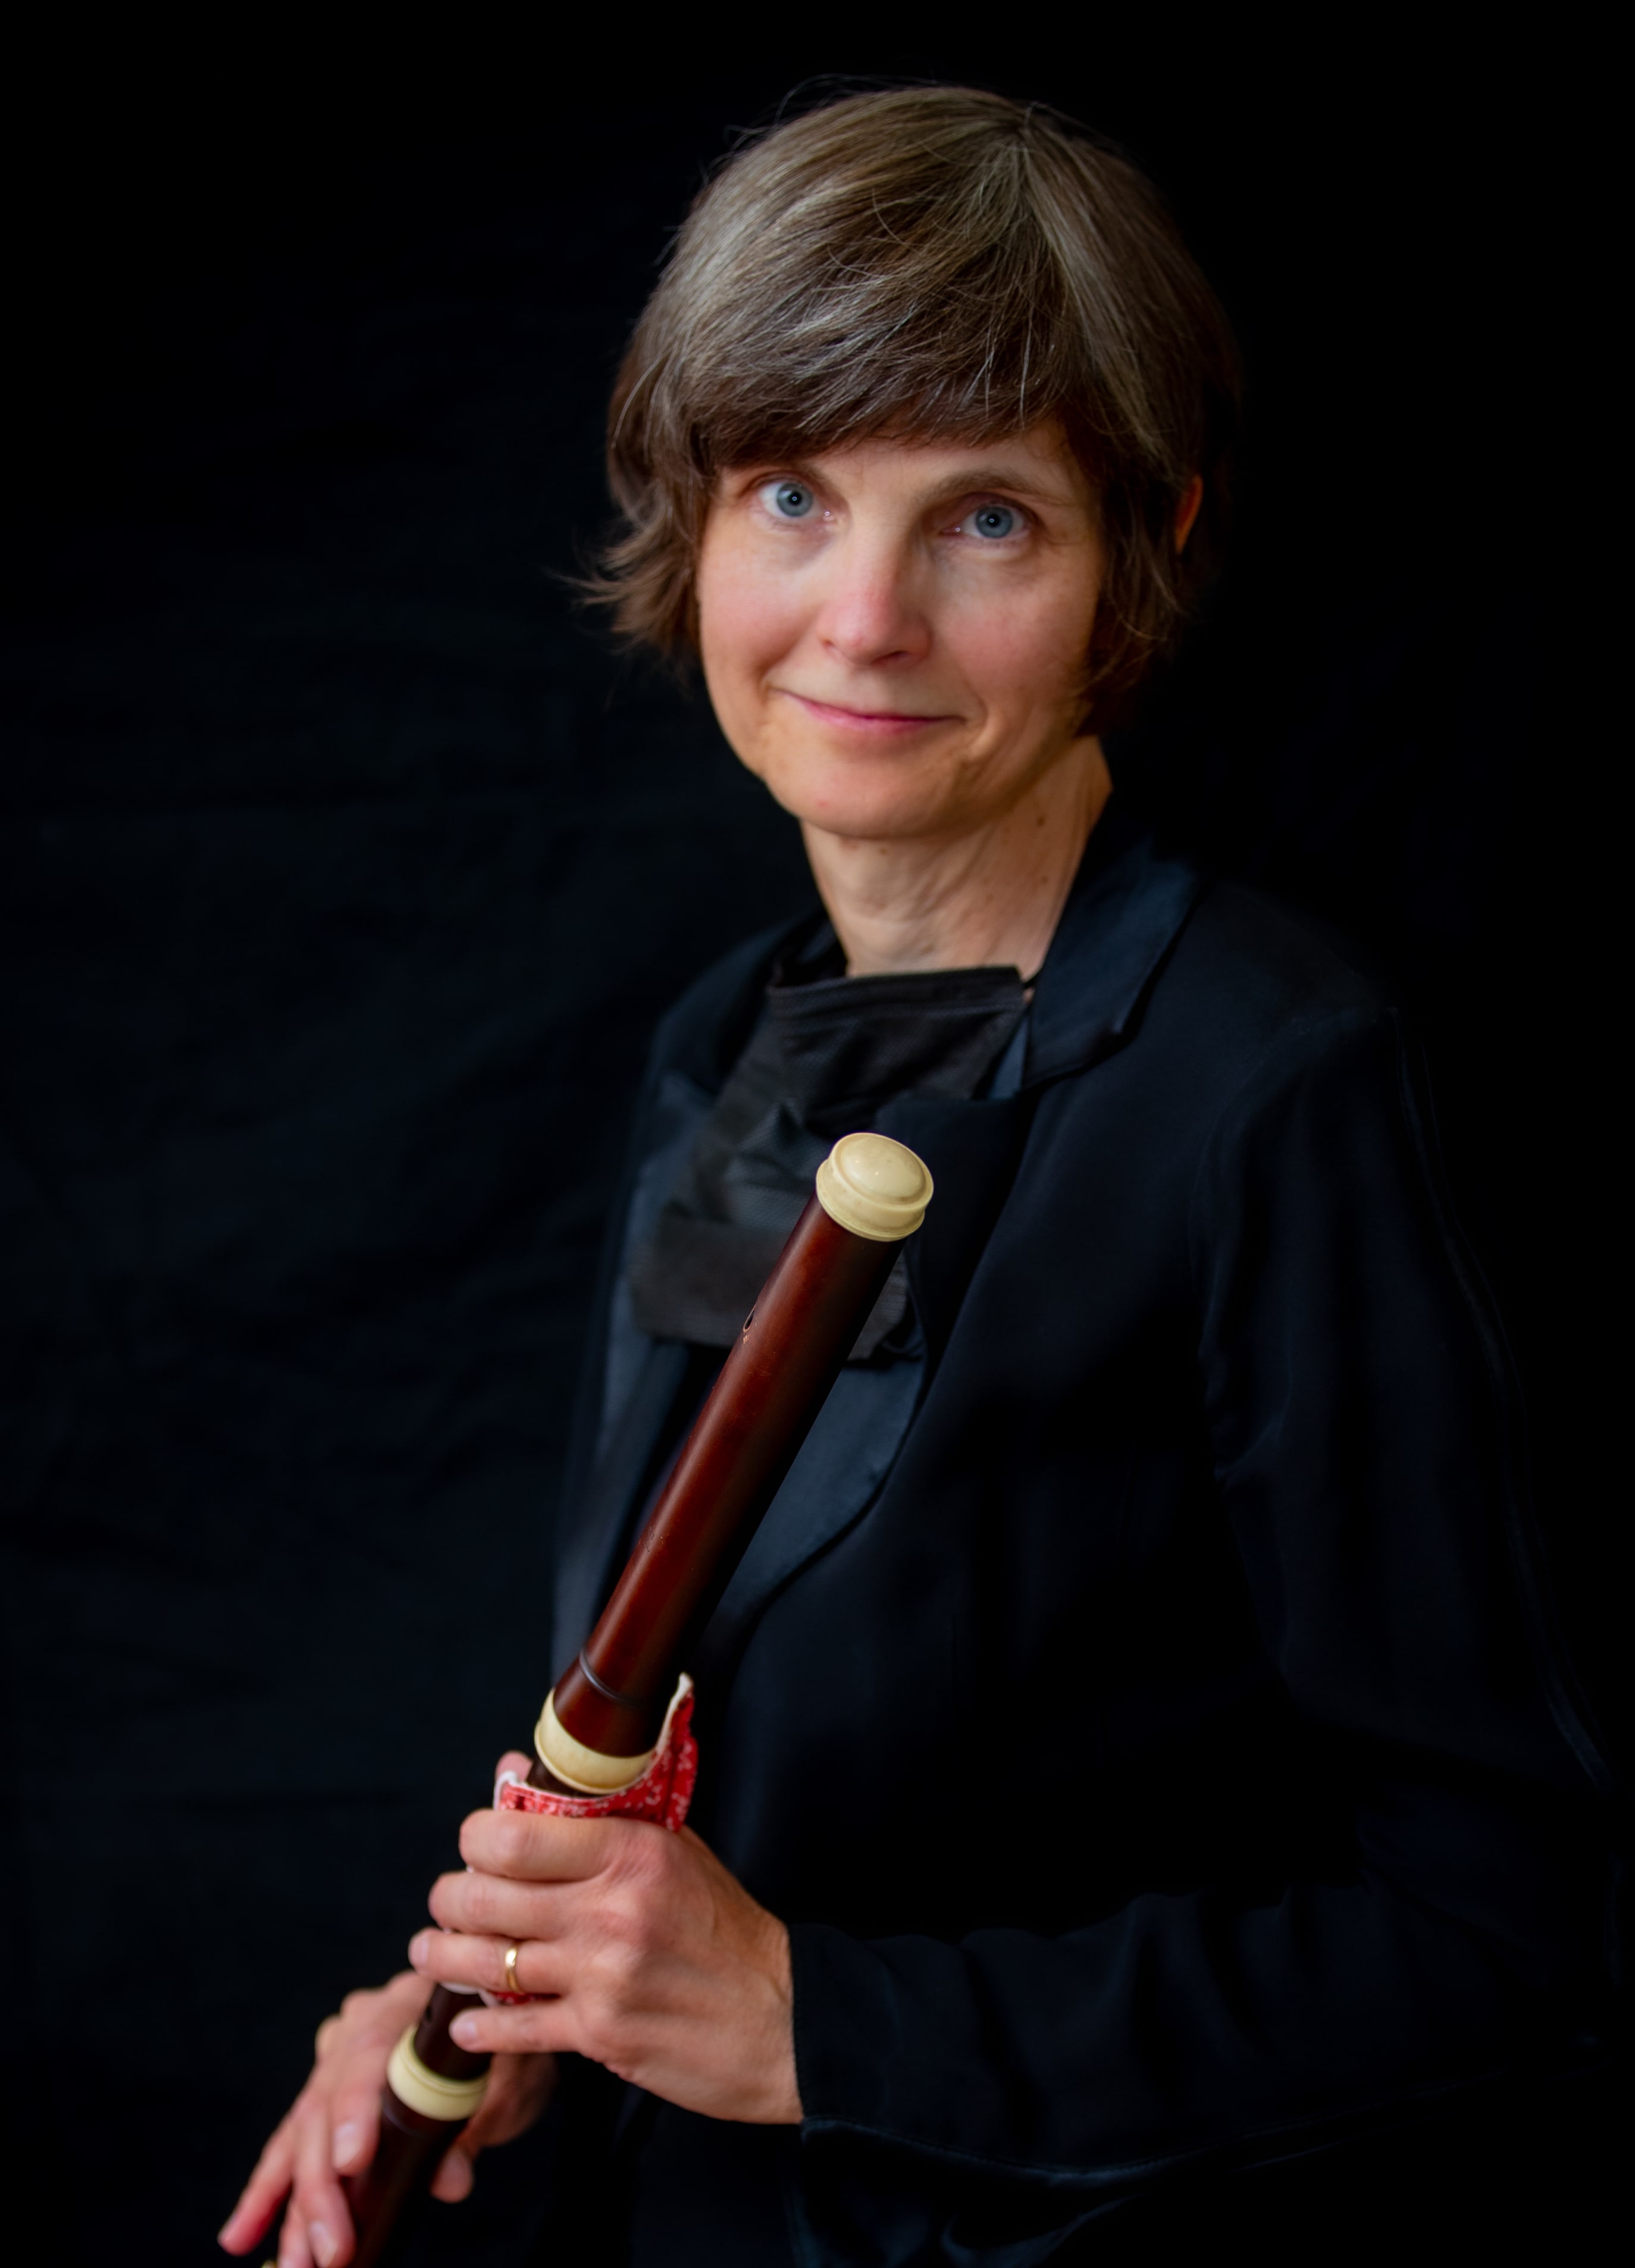 Dr. Laura Koenig